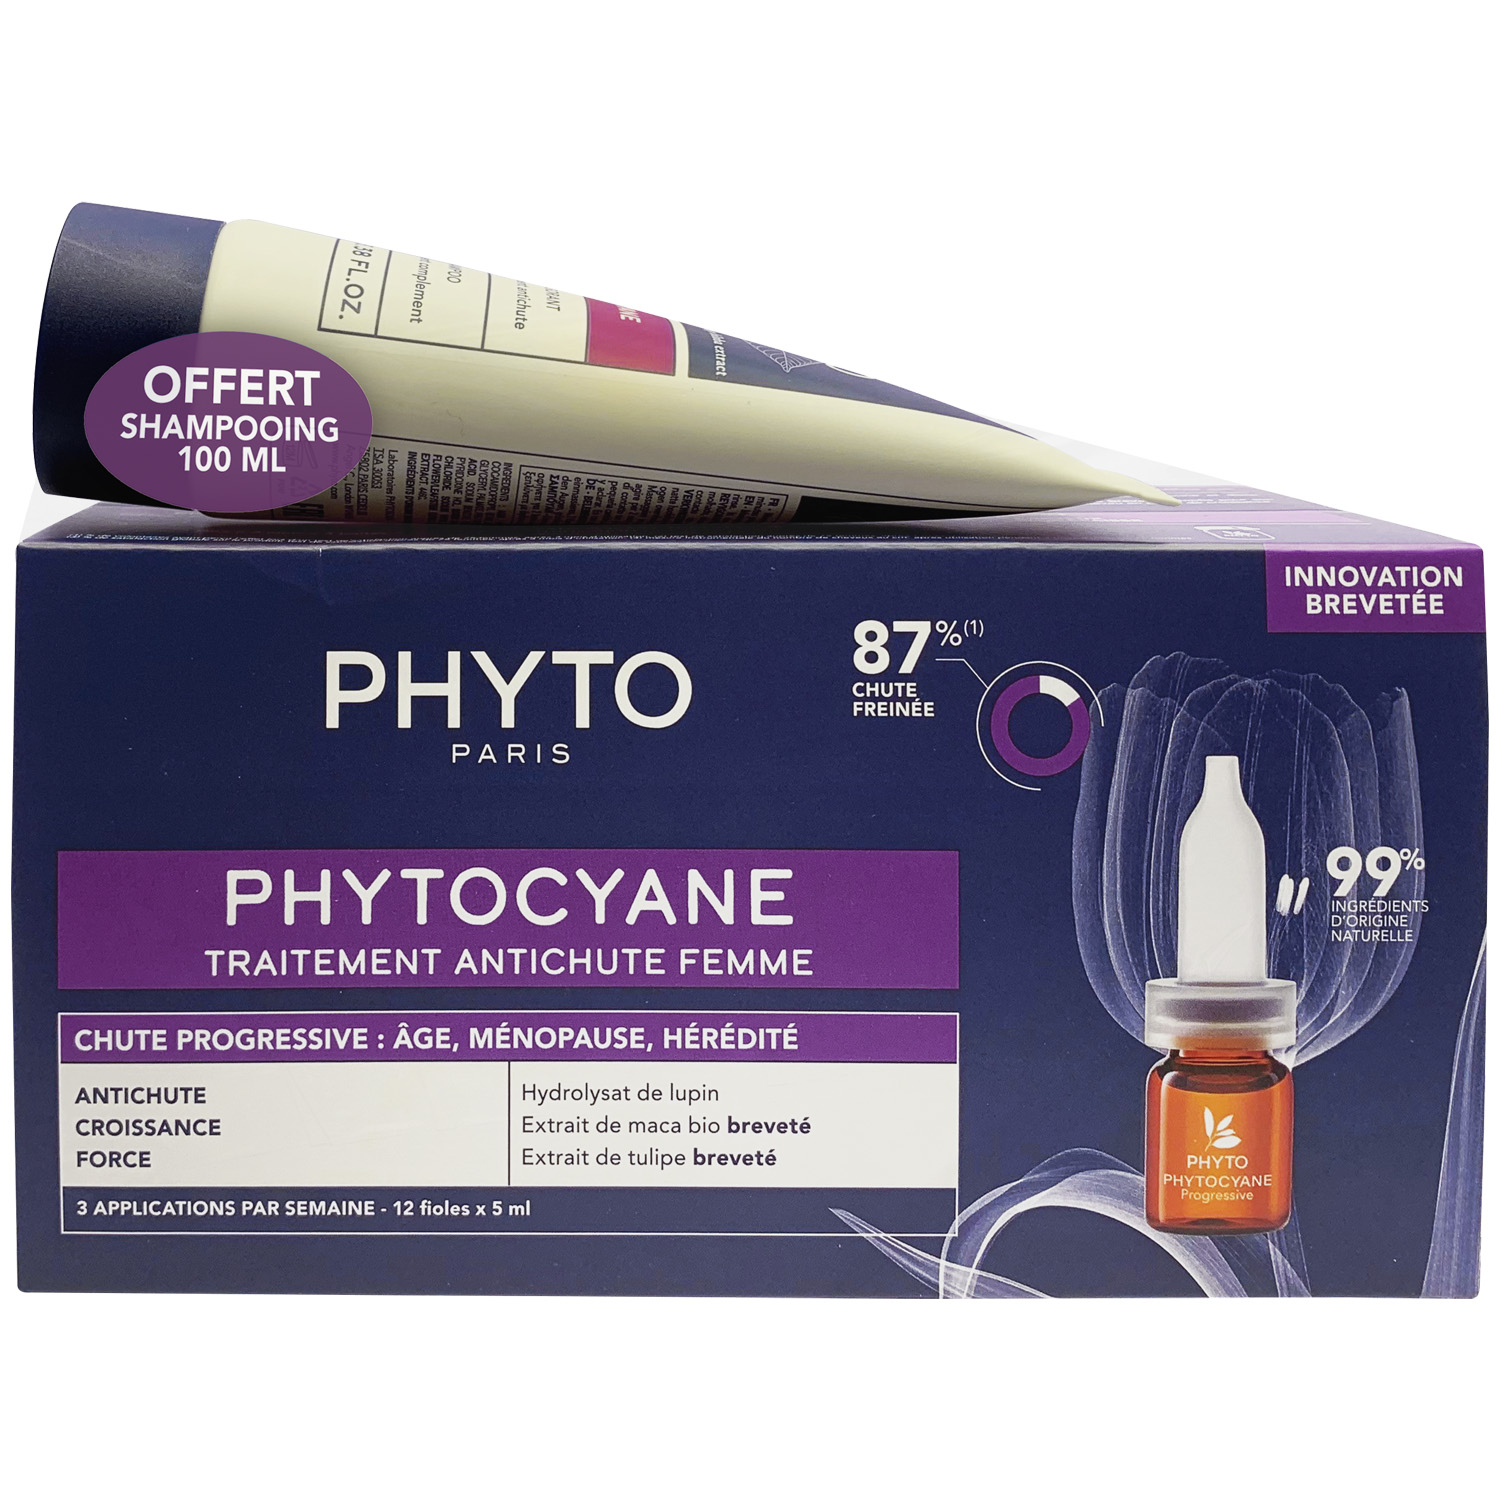 Phyto Набор для женщин: сыворотка от выпадения волос 12х 5мл + укрепляющий шампунь 100 мл (Phyto, Phytocyane) цена и фото